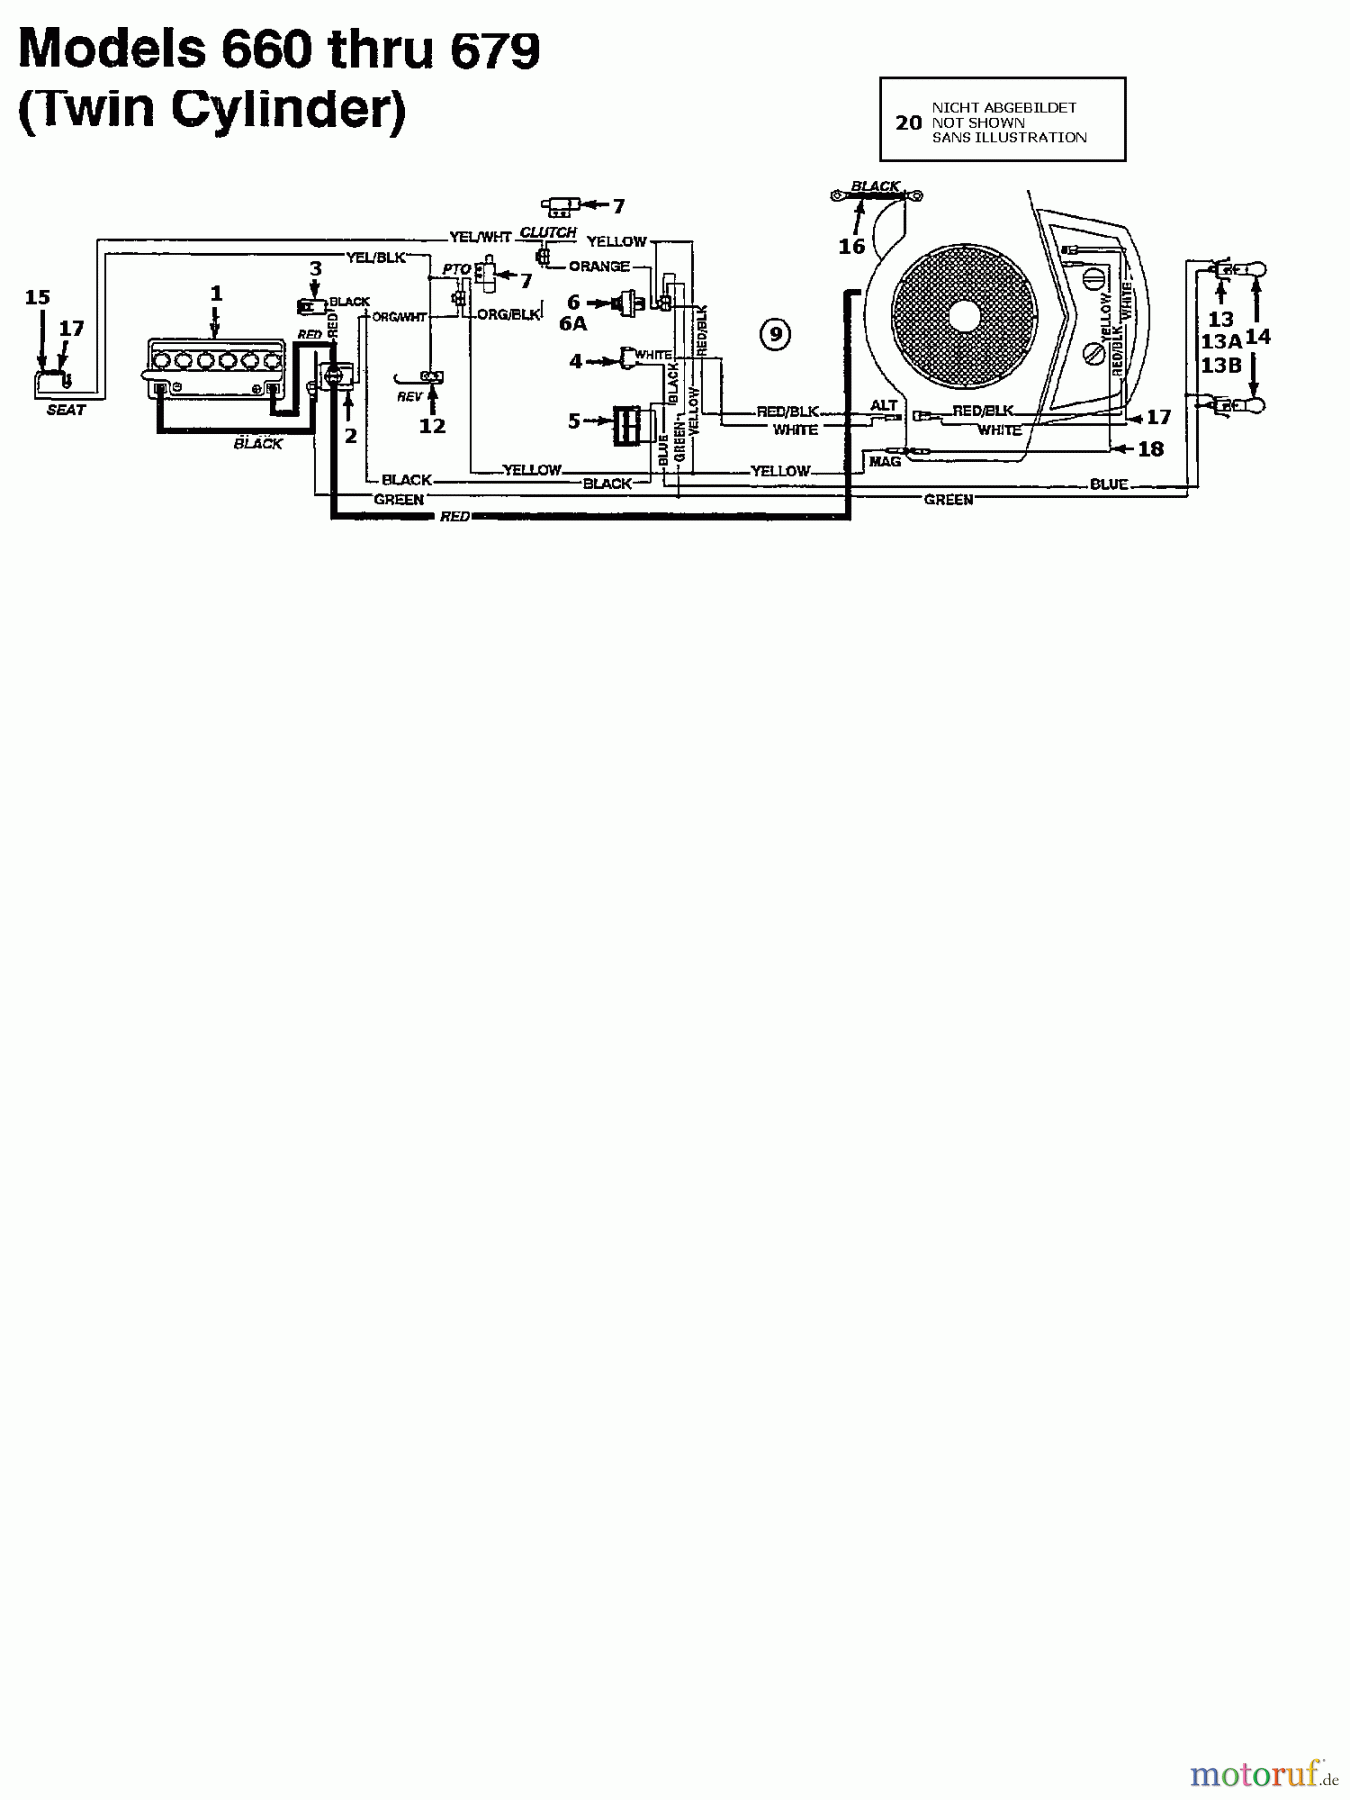  MTD Rasentraktoren 13/96 135N675F678  (1995) Schaltplan 2 Zylinder